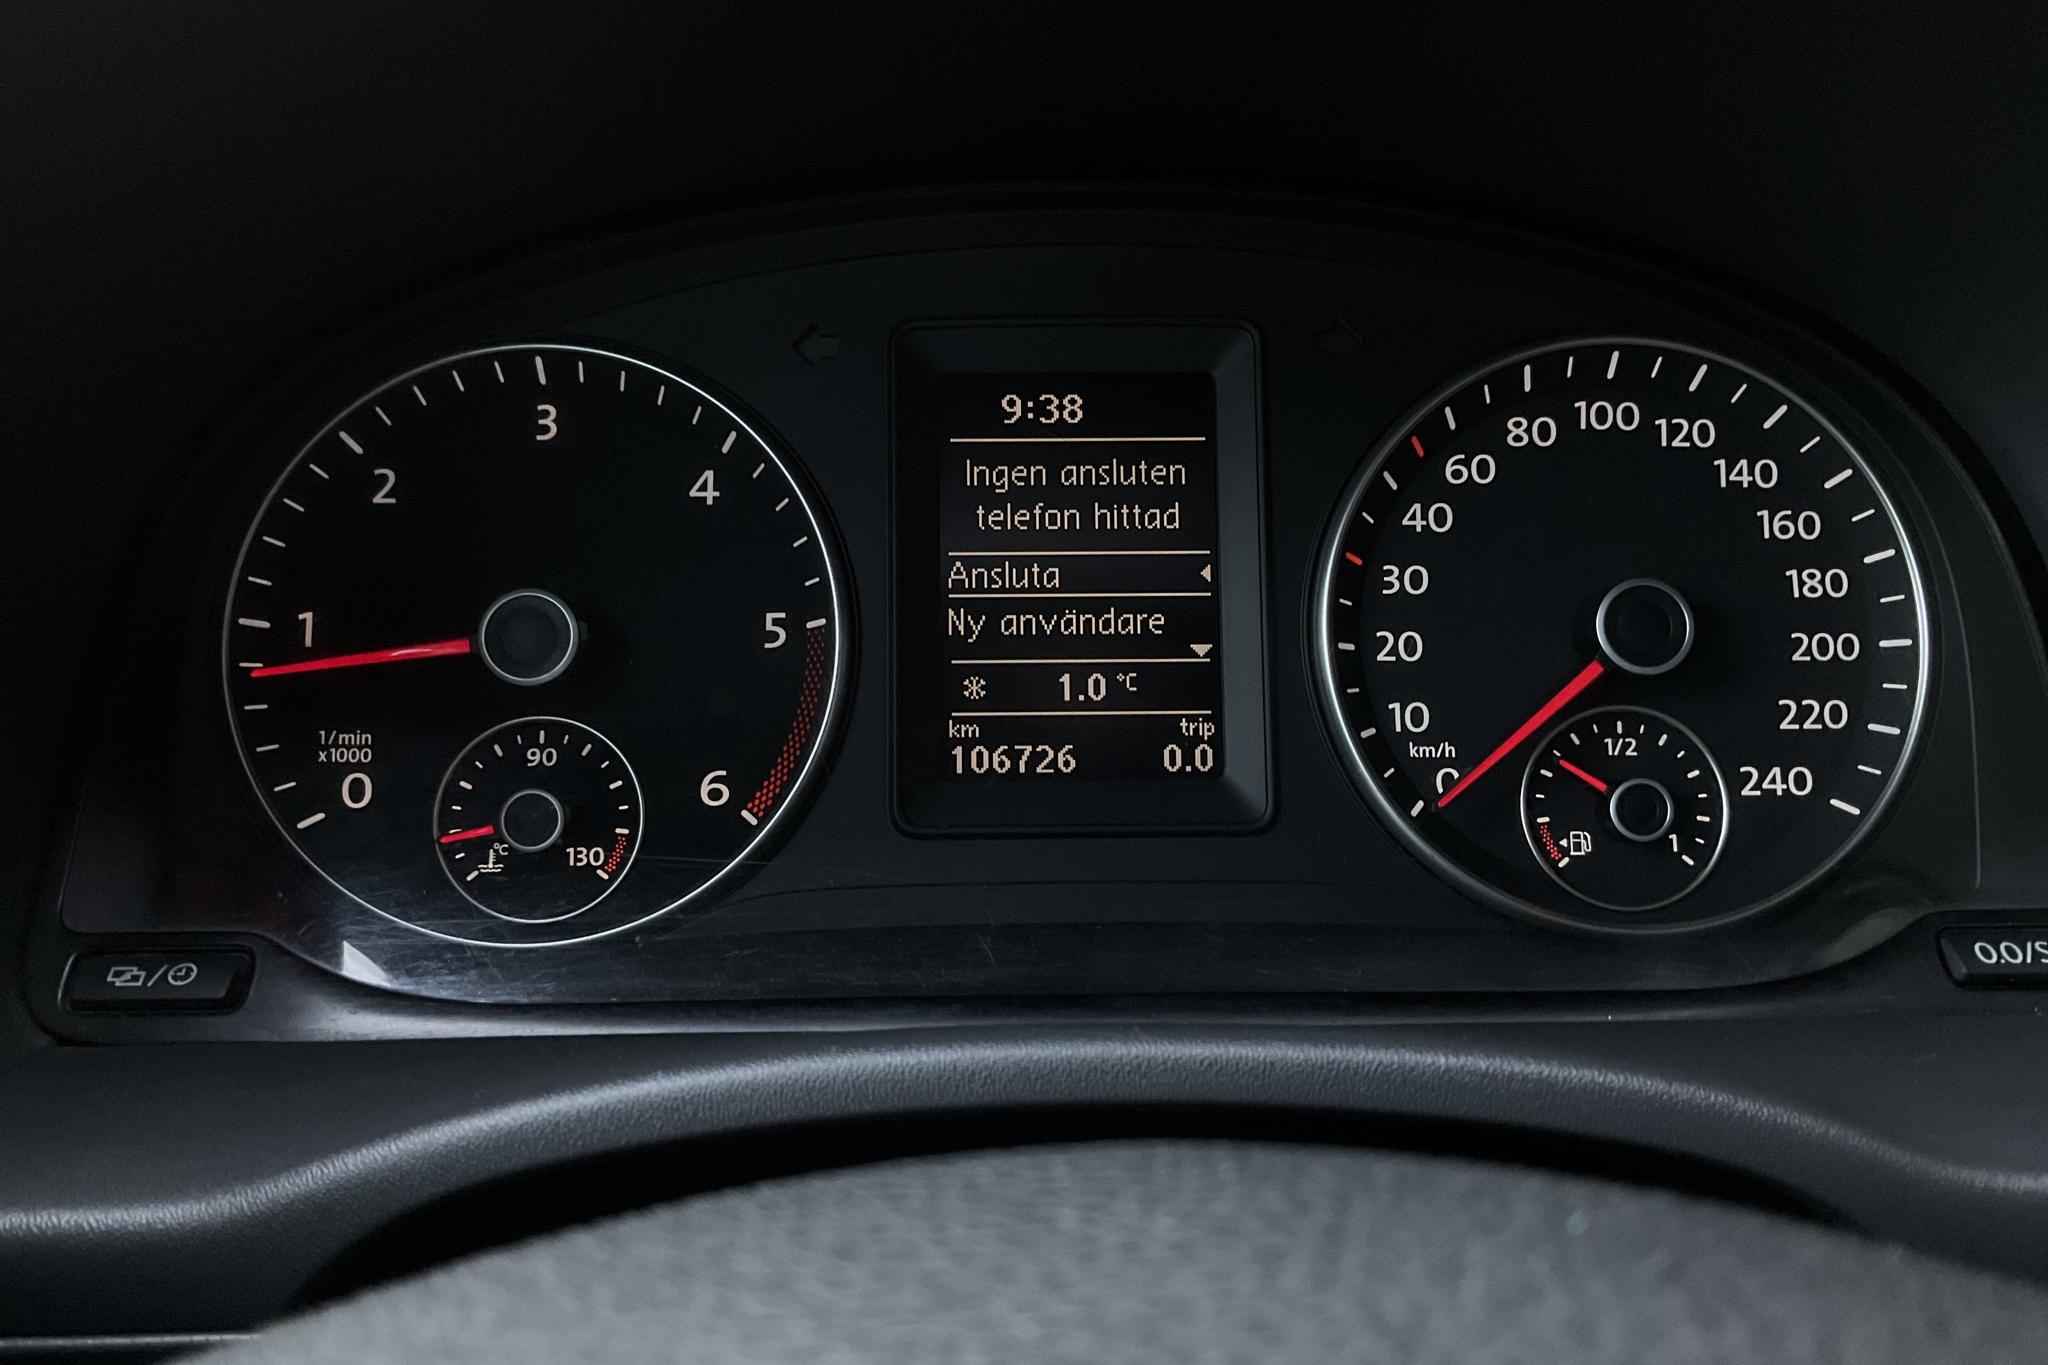 VW Caddy 1.6 TDI Skåp (75hk) - 10 672 mil - Manuell - vit - 2015